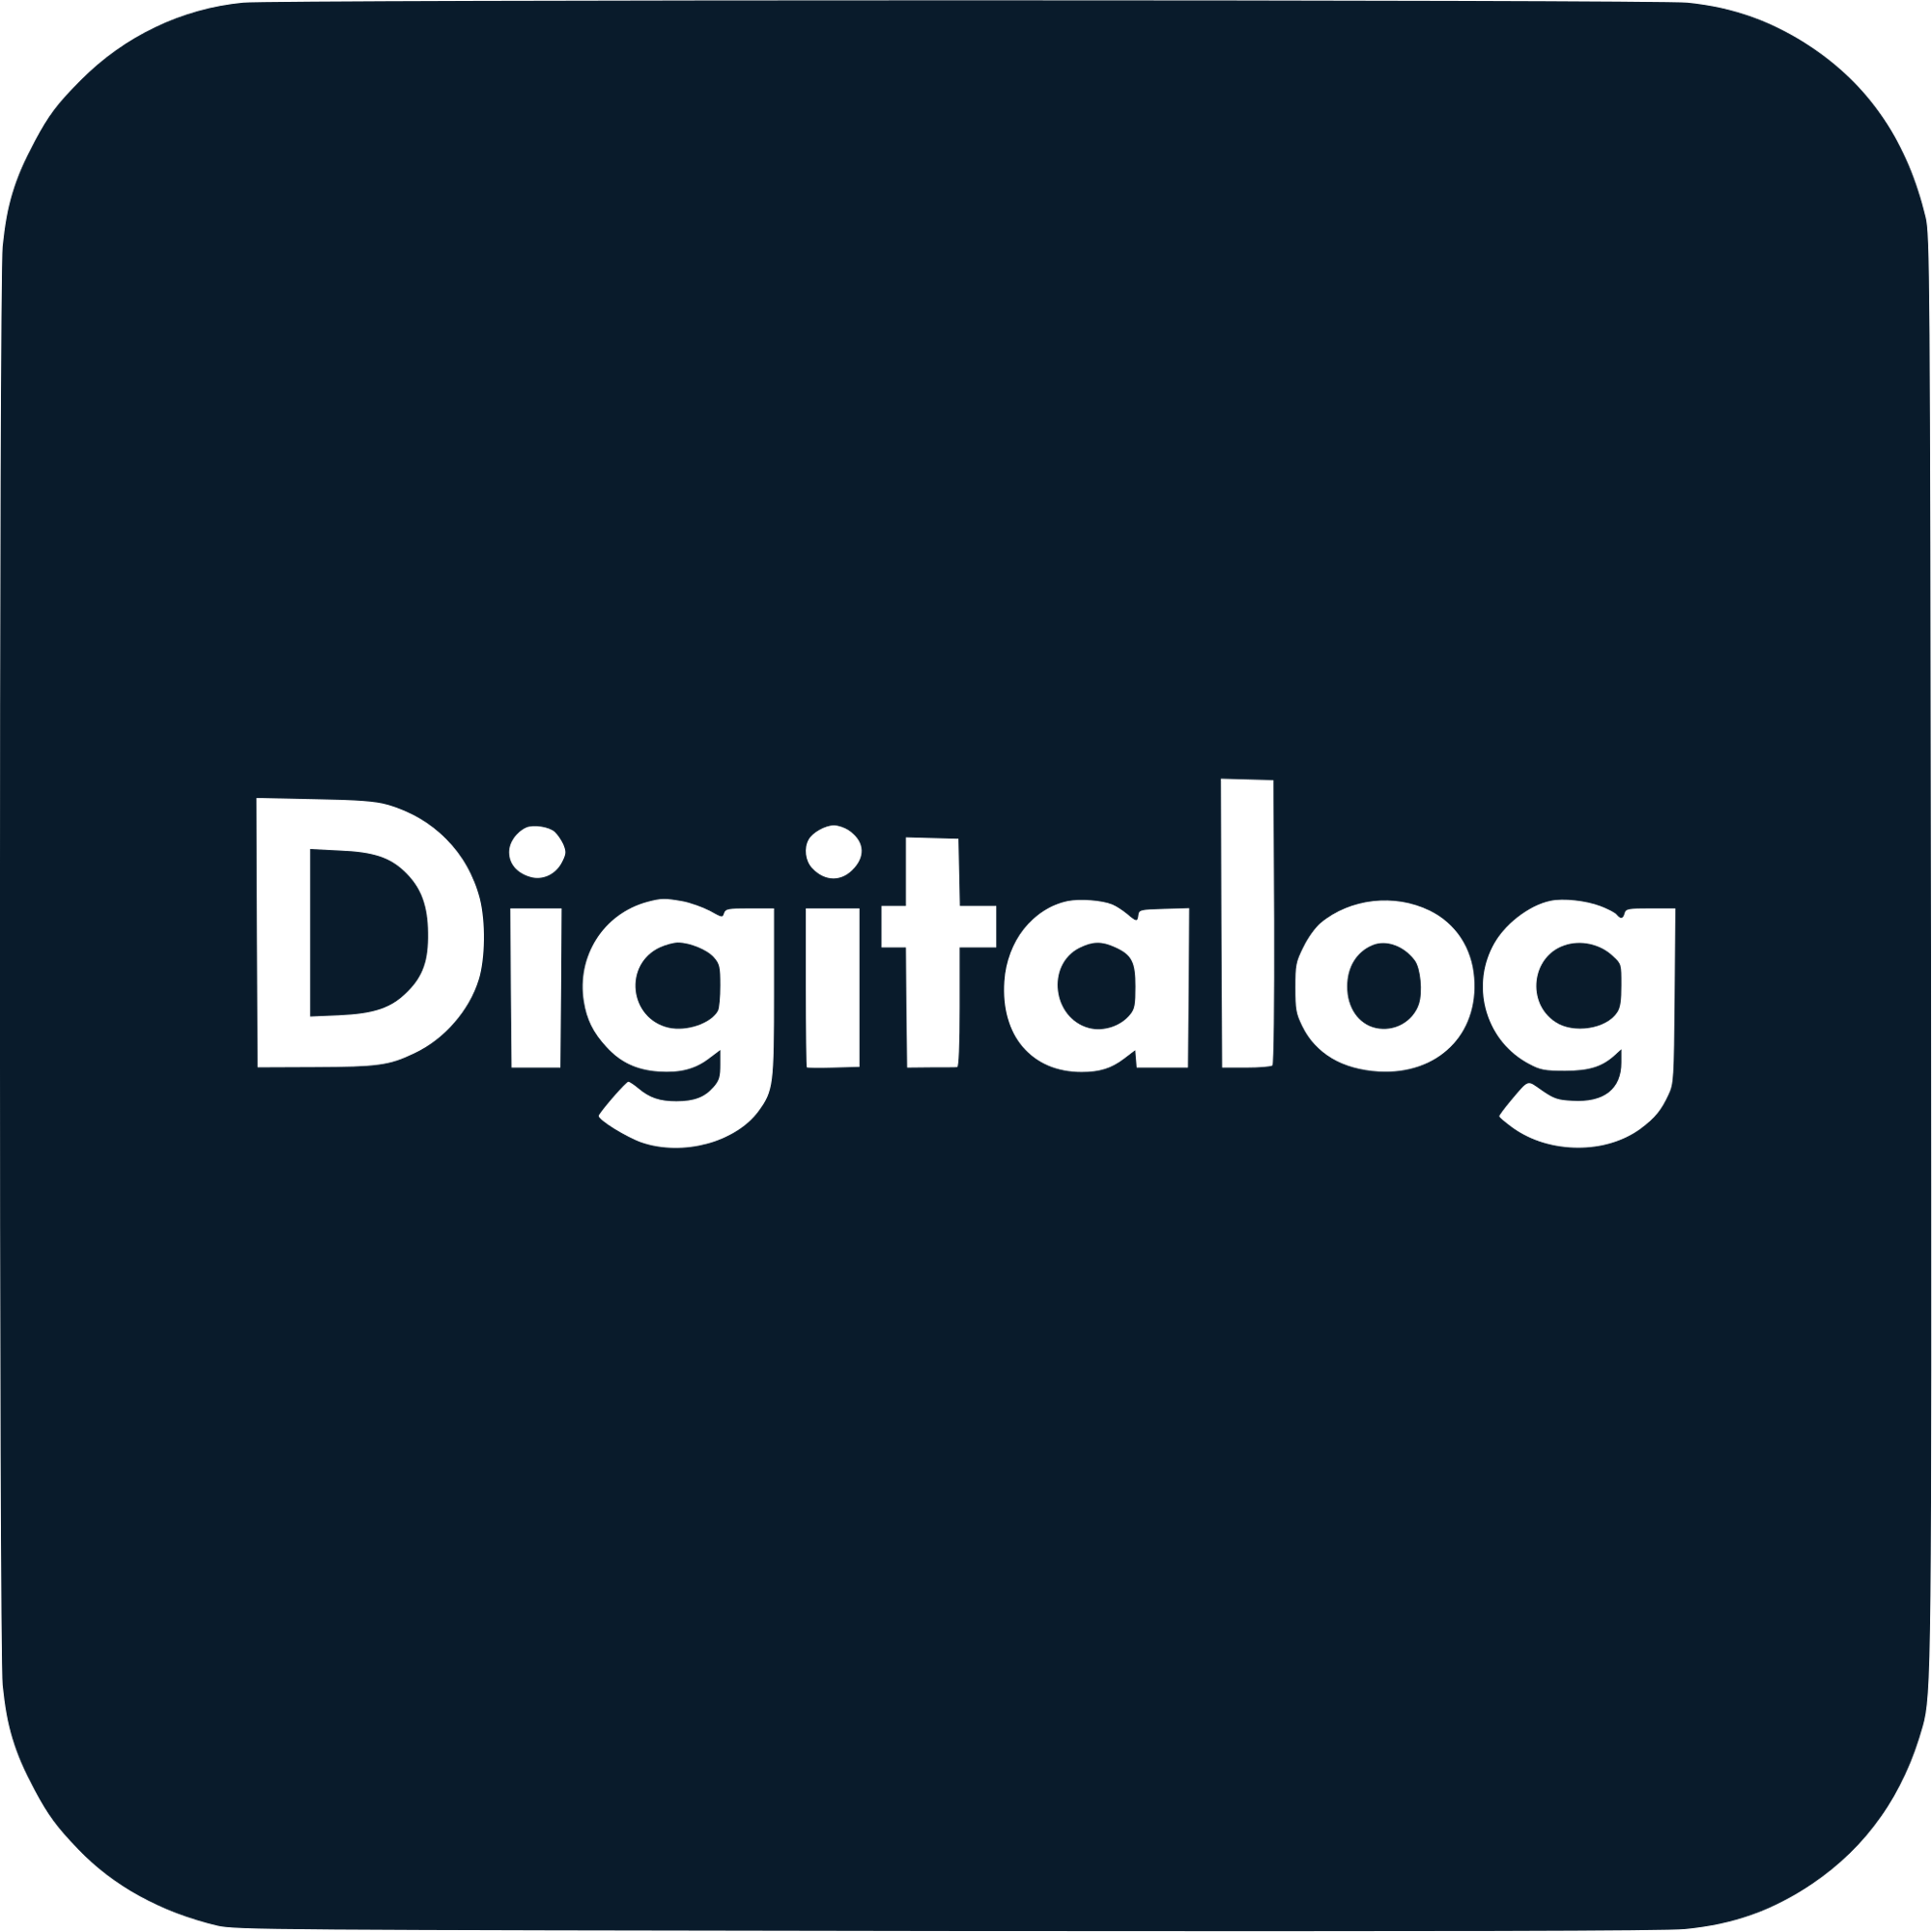 Digitalog Logo  Transparent Clipart